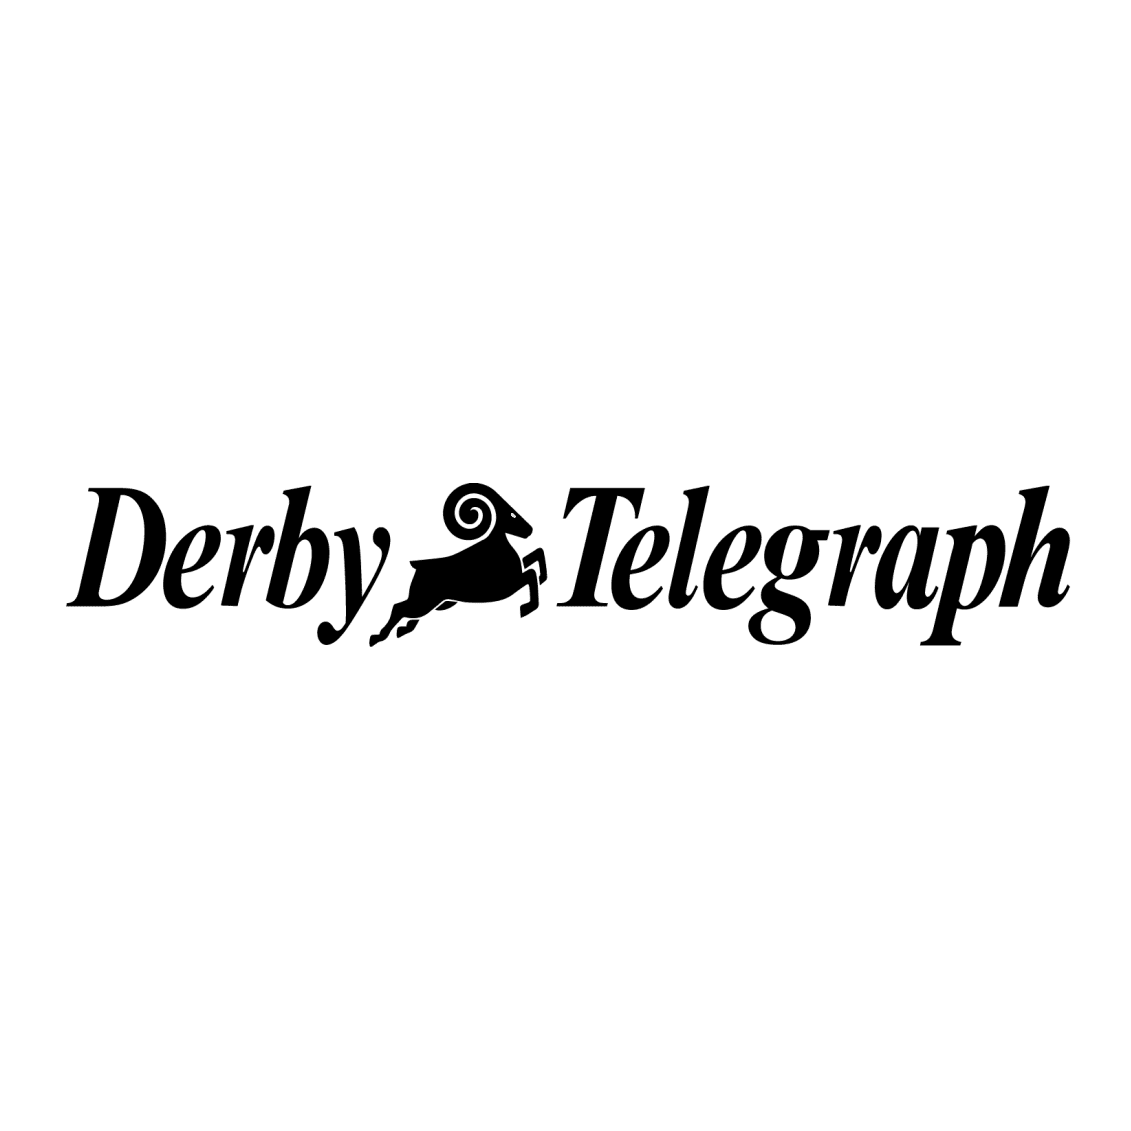 Derby telegraph